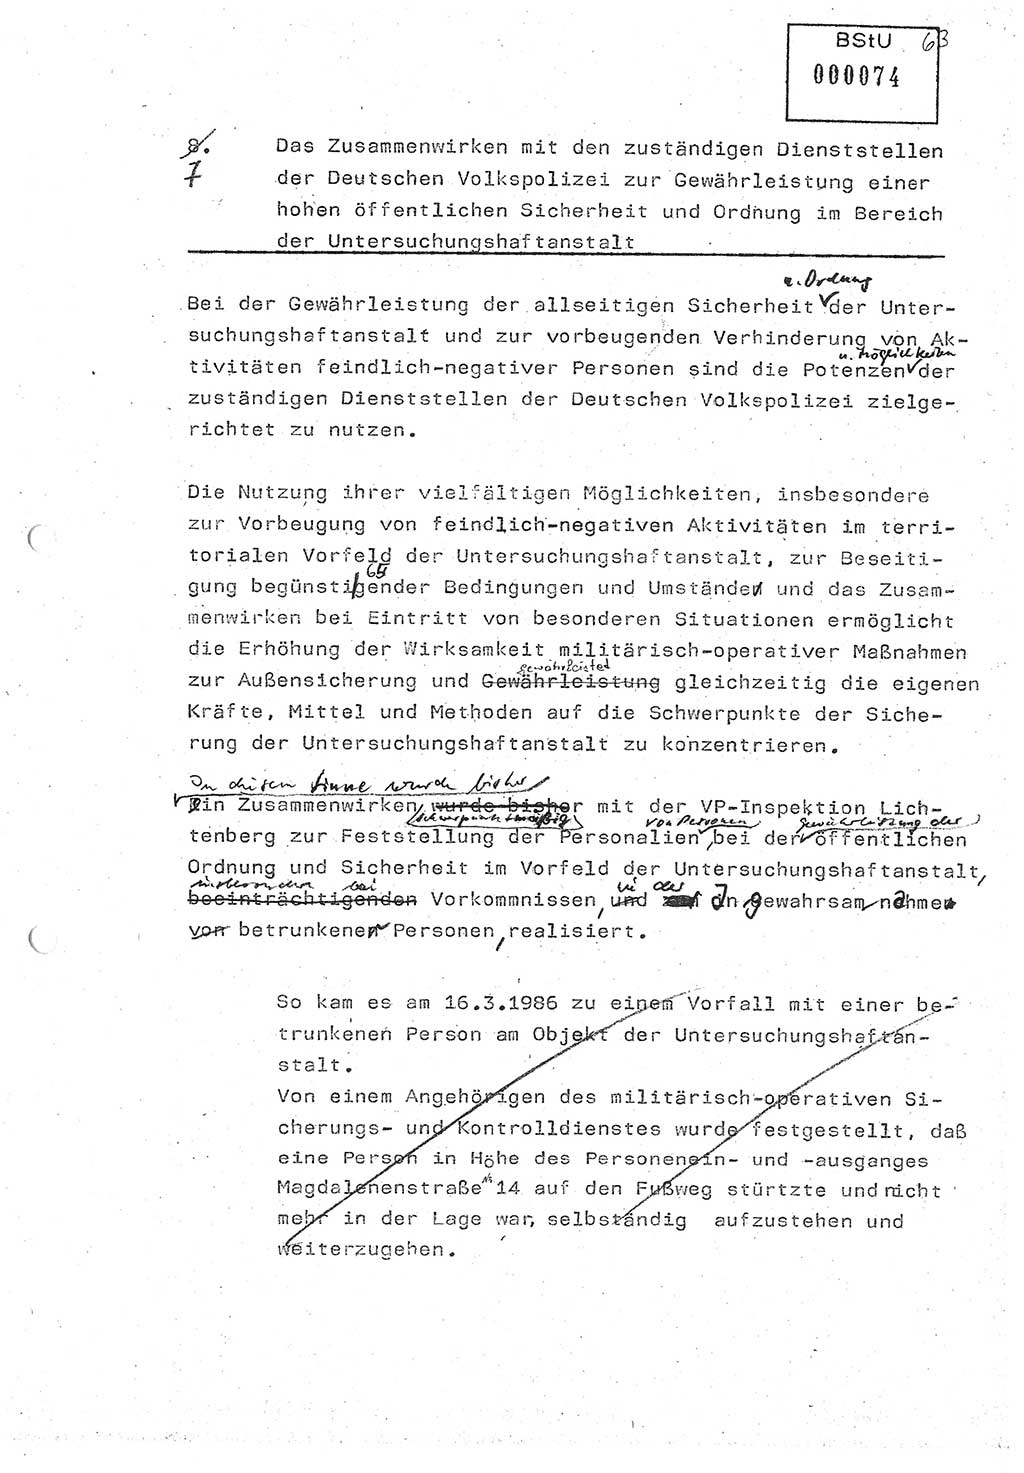 Diplomarbeit (Entwurf) Oberleutnant Peter Parke (Abt. ⅩⅣ), Ministerium für Staatssicherheit (MfS) [Deutsche Demokratische Republik (DDR)], Juristische Hochschule (JHS), Geheime Verschlußsache (GVS) o001-98/86, Potsdam 1986, Seite 74 (Dipl.-Arb. MfS DDR JHS GVS o001-98/86 1986, S. 74)